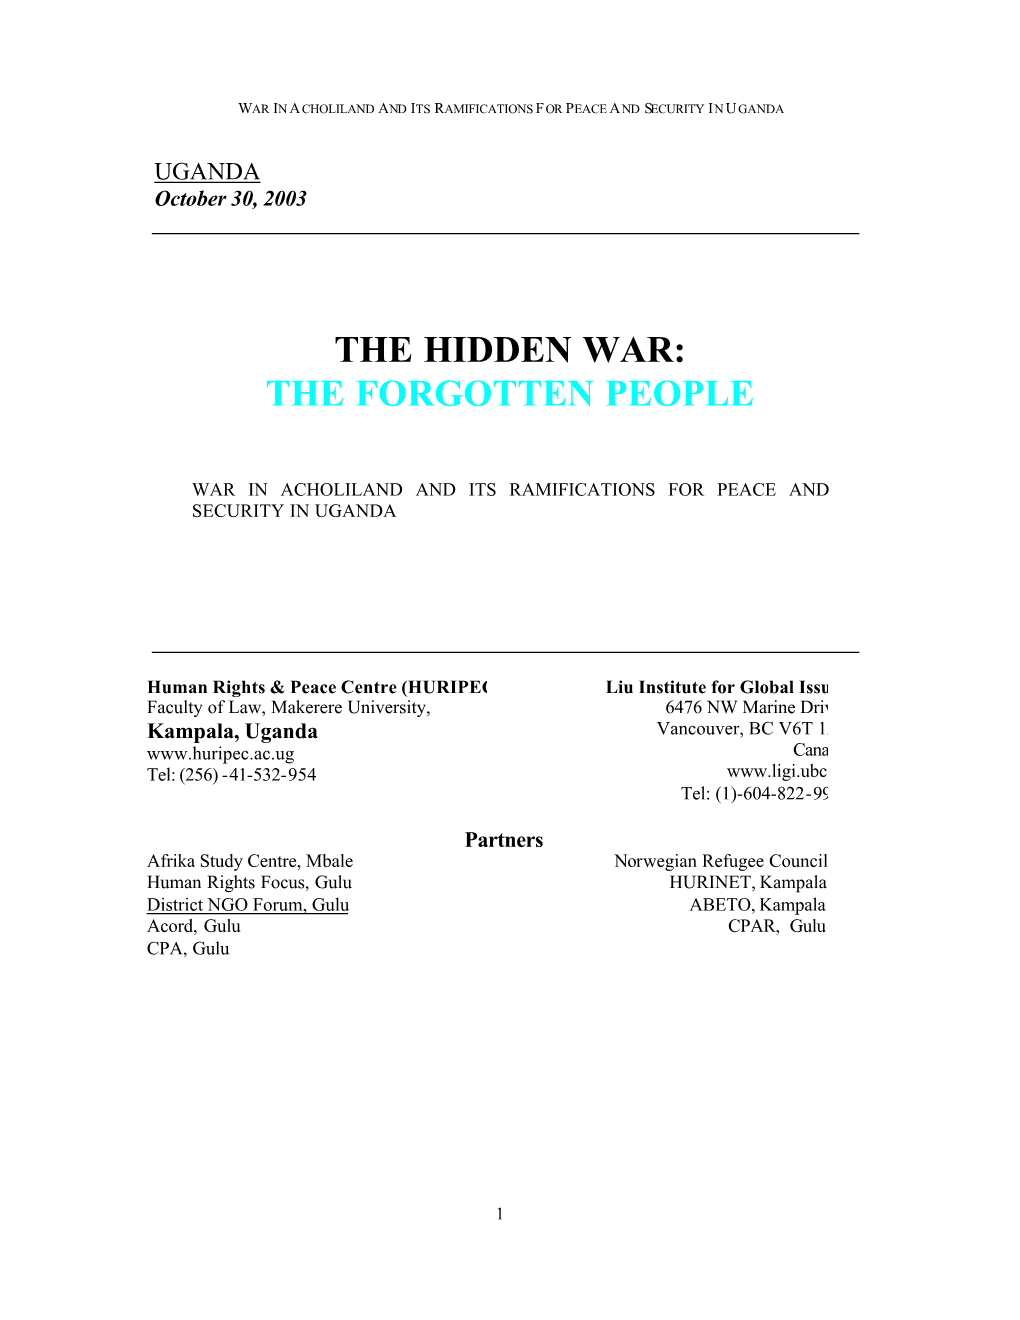 The Hidden War: the Forgotten People